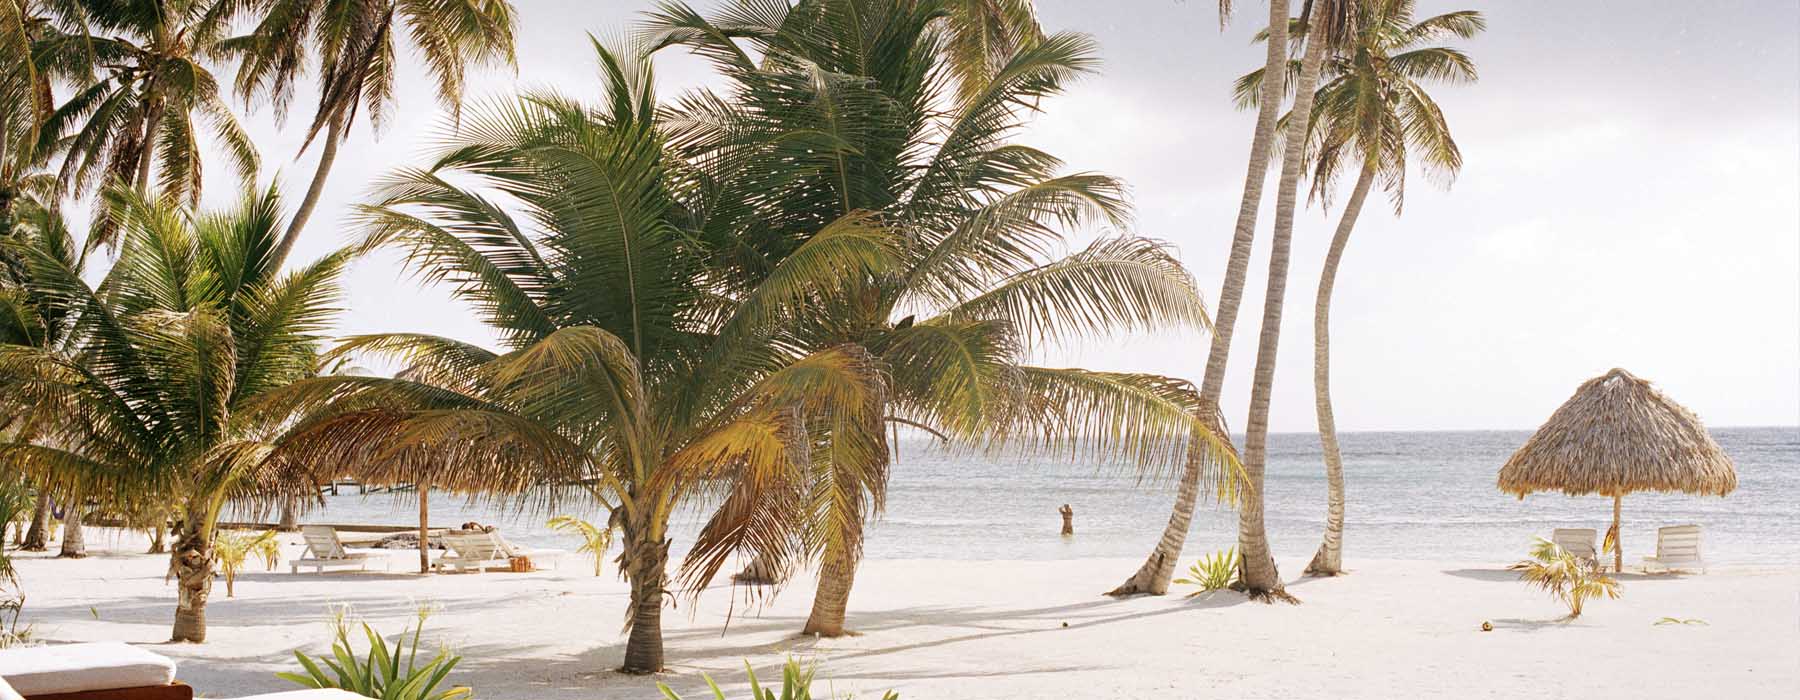 La plage mais pas seulement Belize